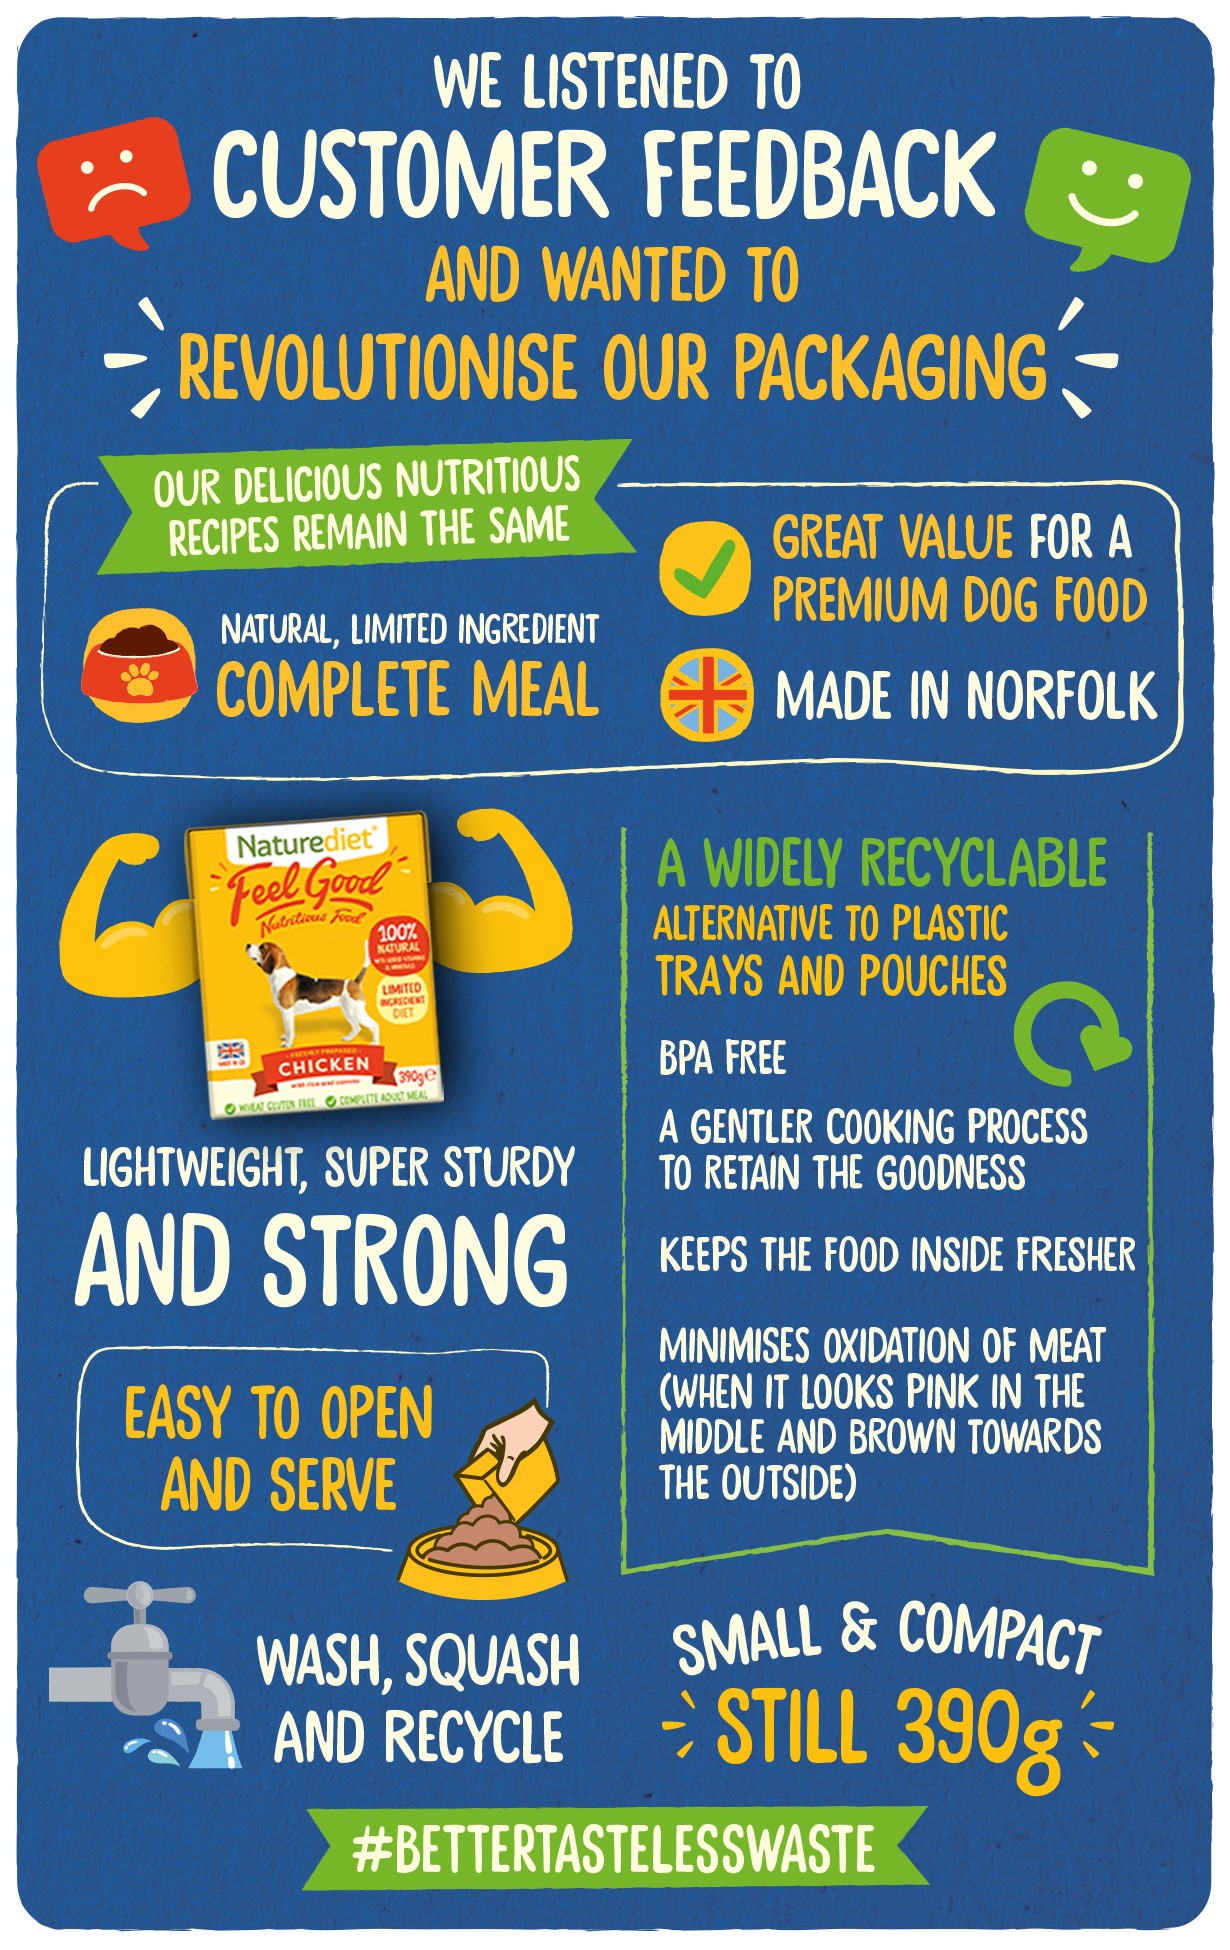 Tetra Pack Pet Food Packaging